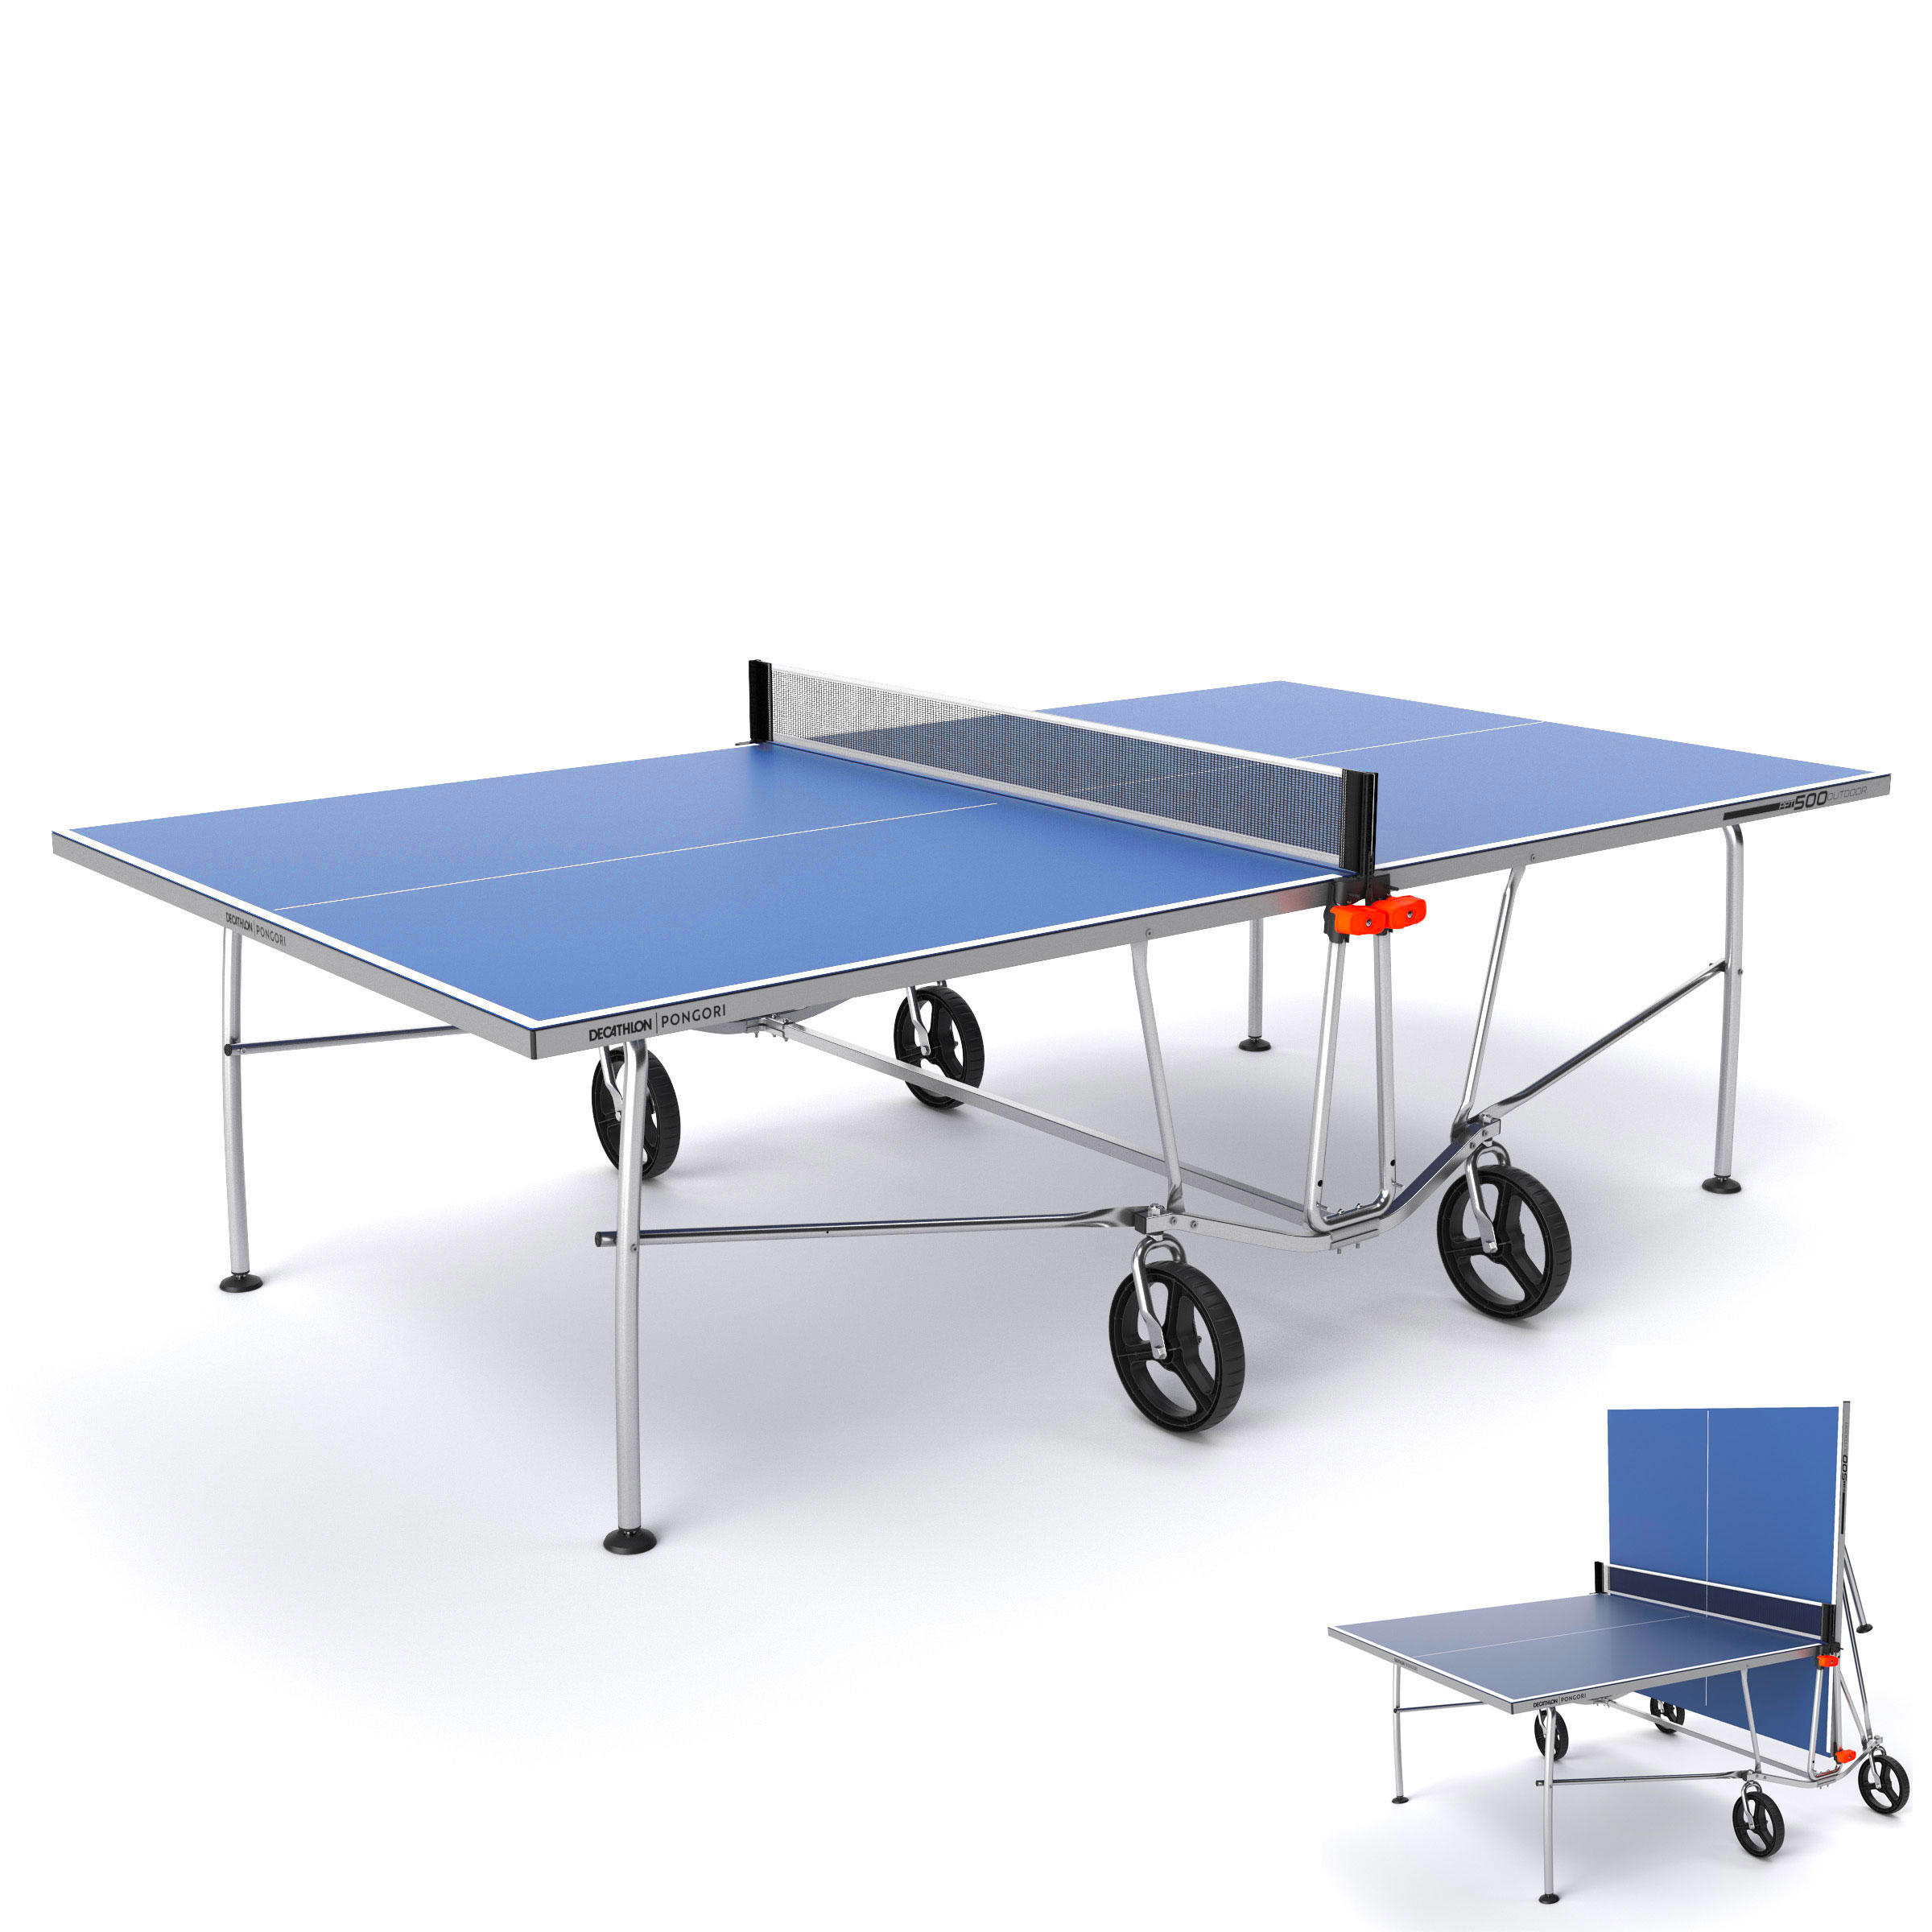 Table Tennis Tables - Decathlon